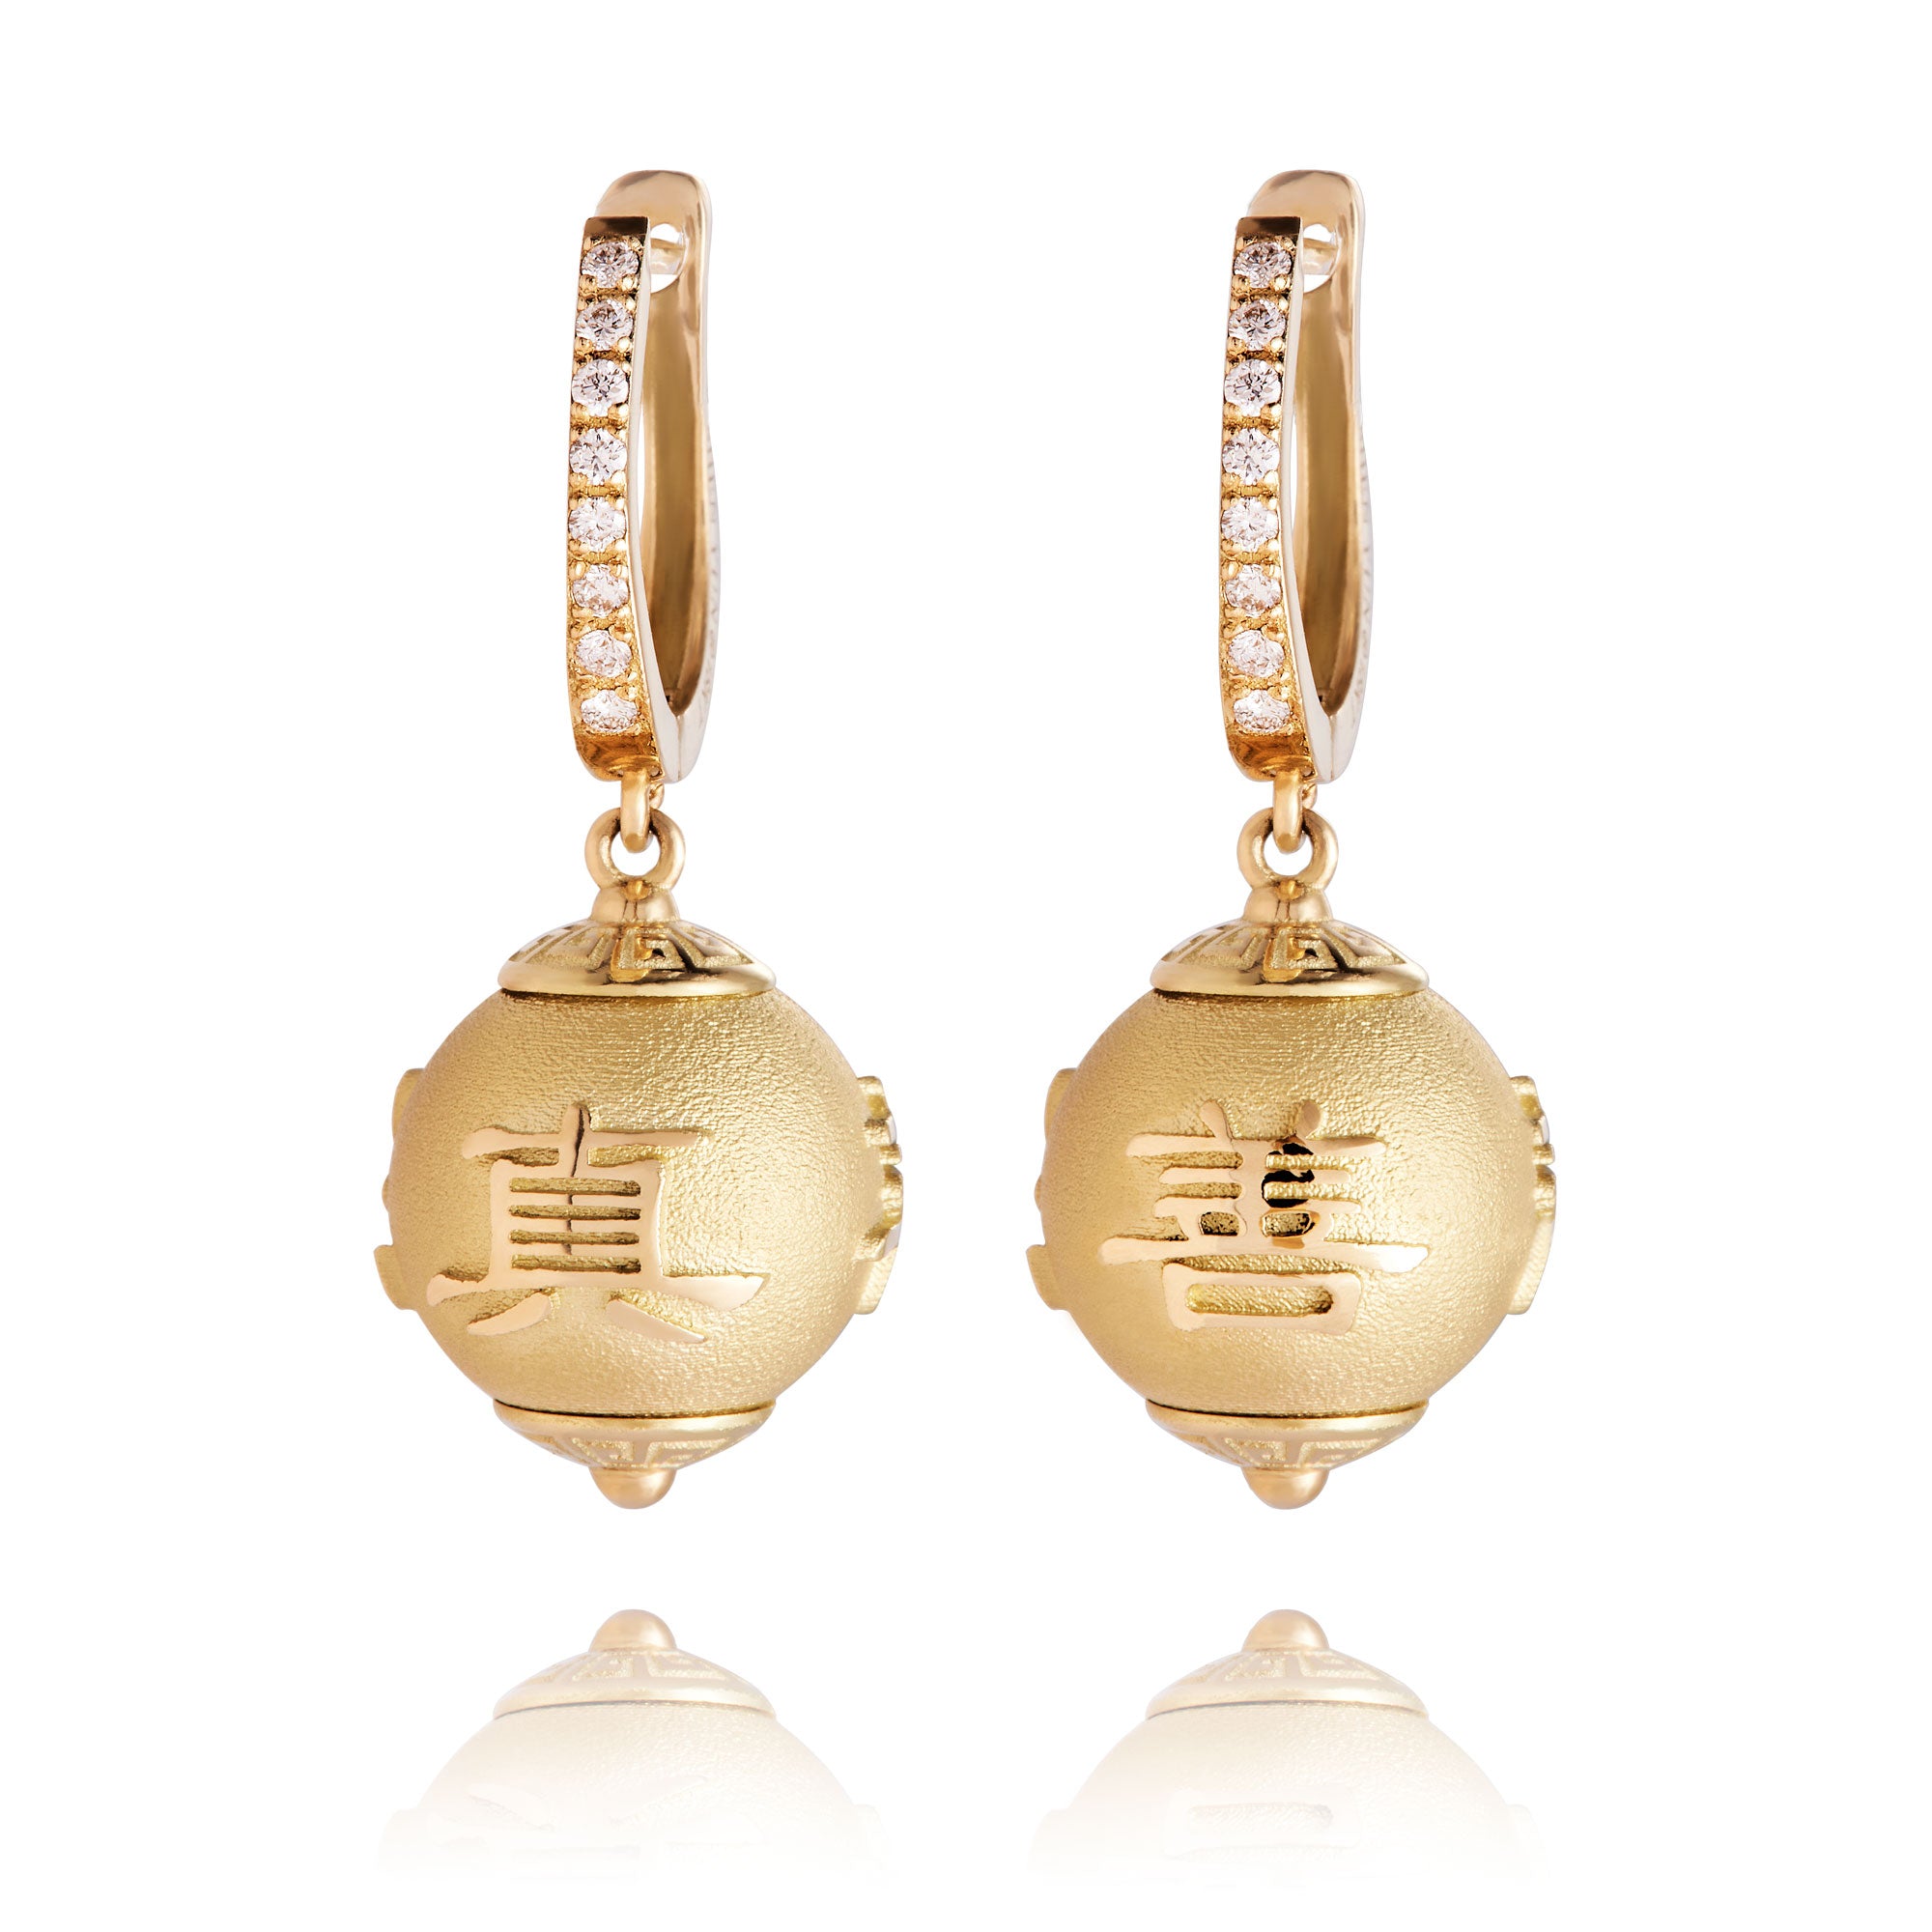 Zhen Shan Ren Timeless Heritage Earrings 18kt Gold Front View | Shen Yun Shop